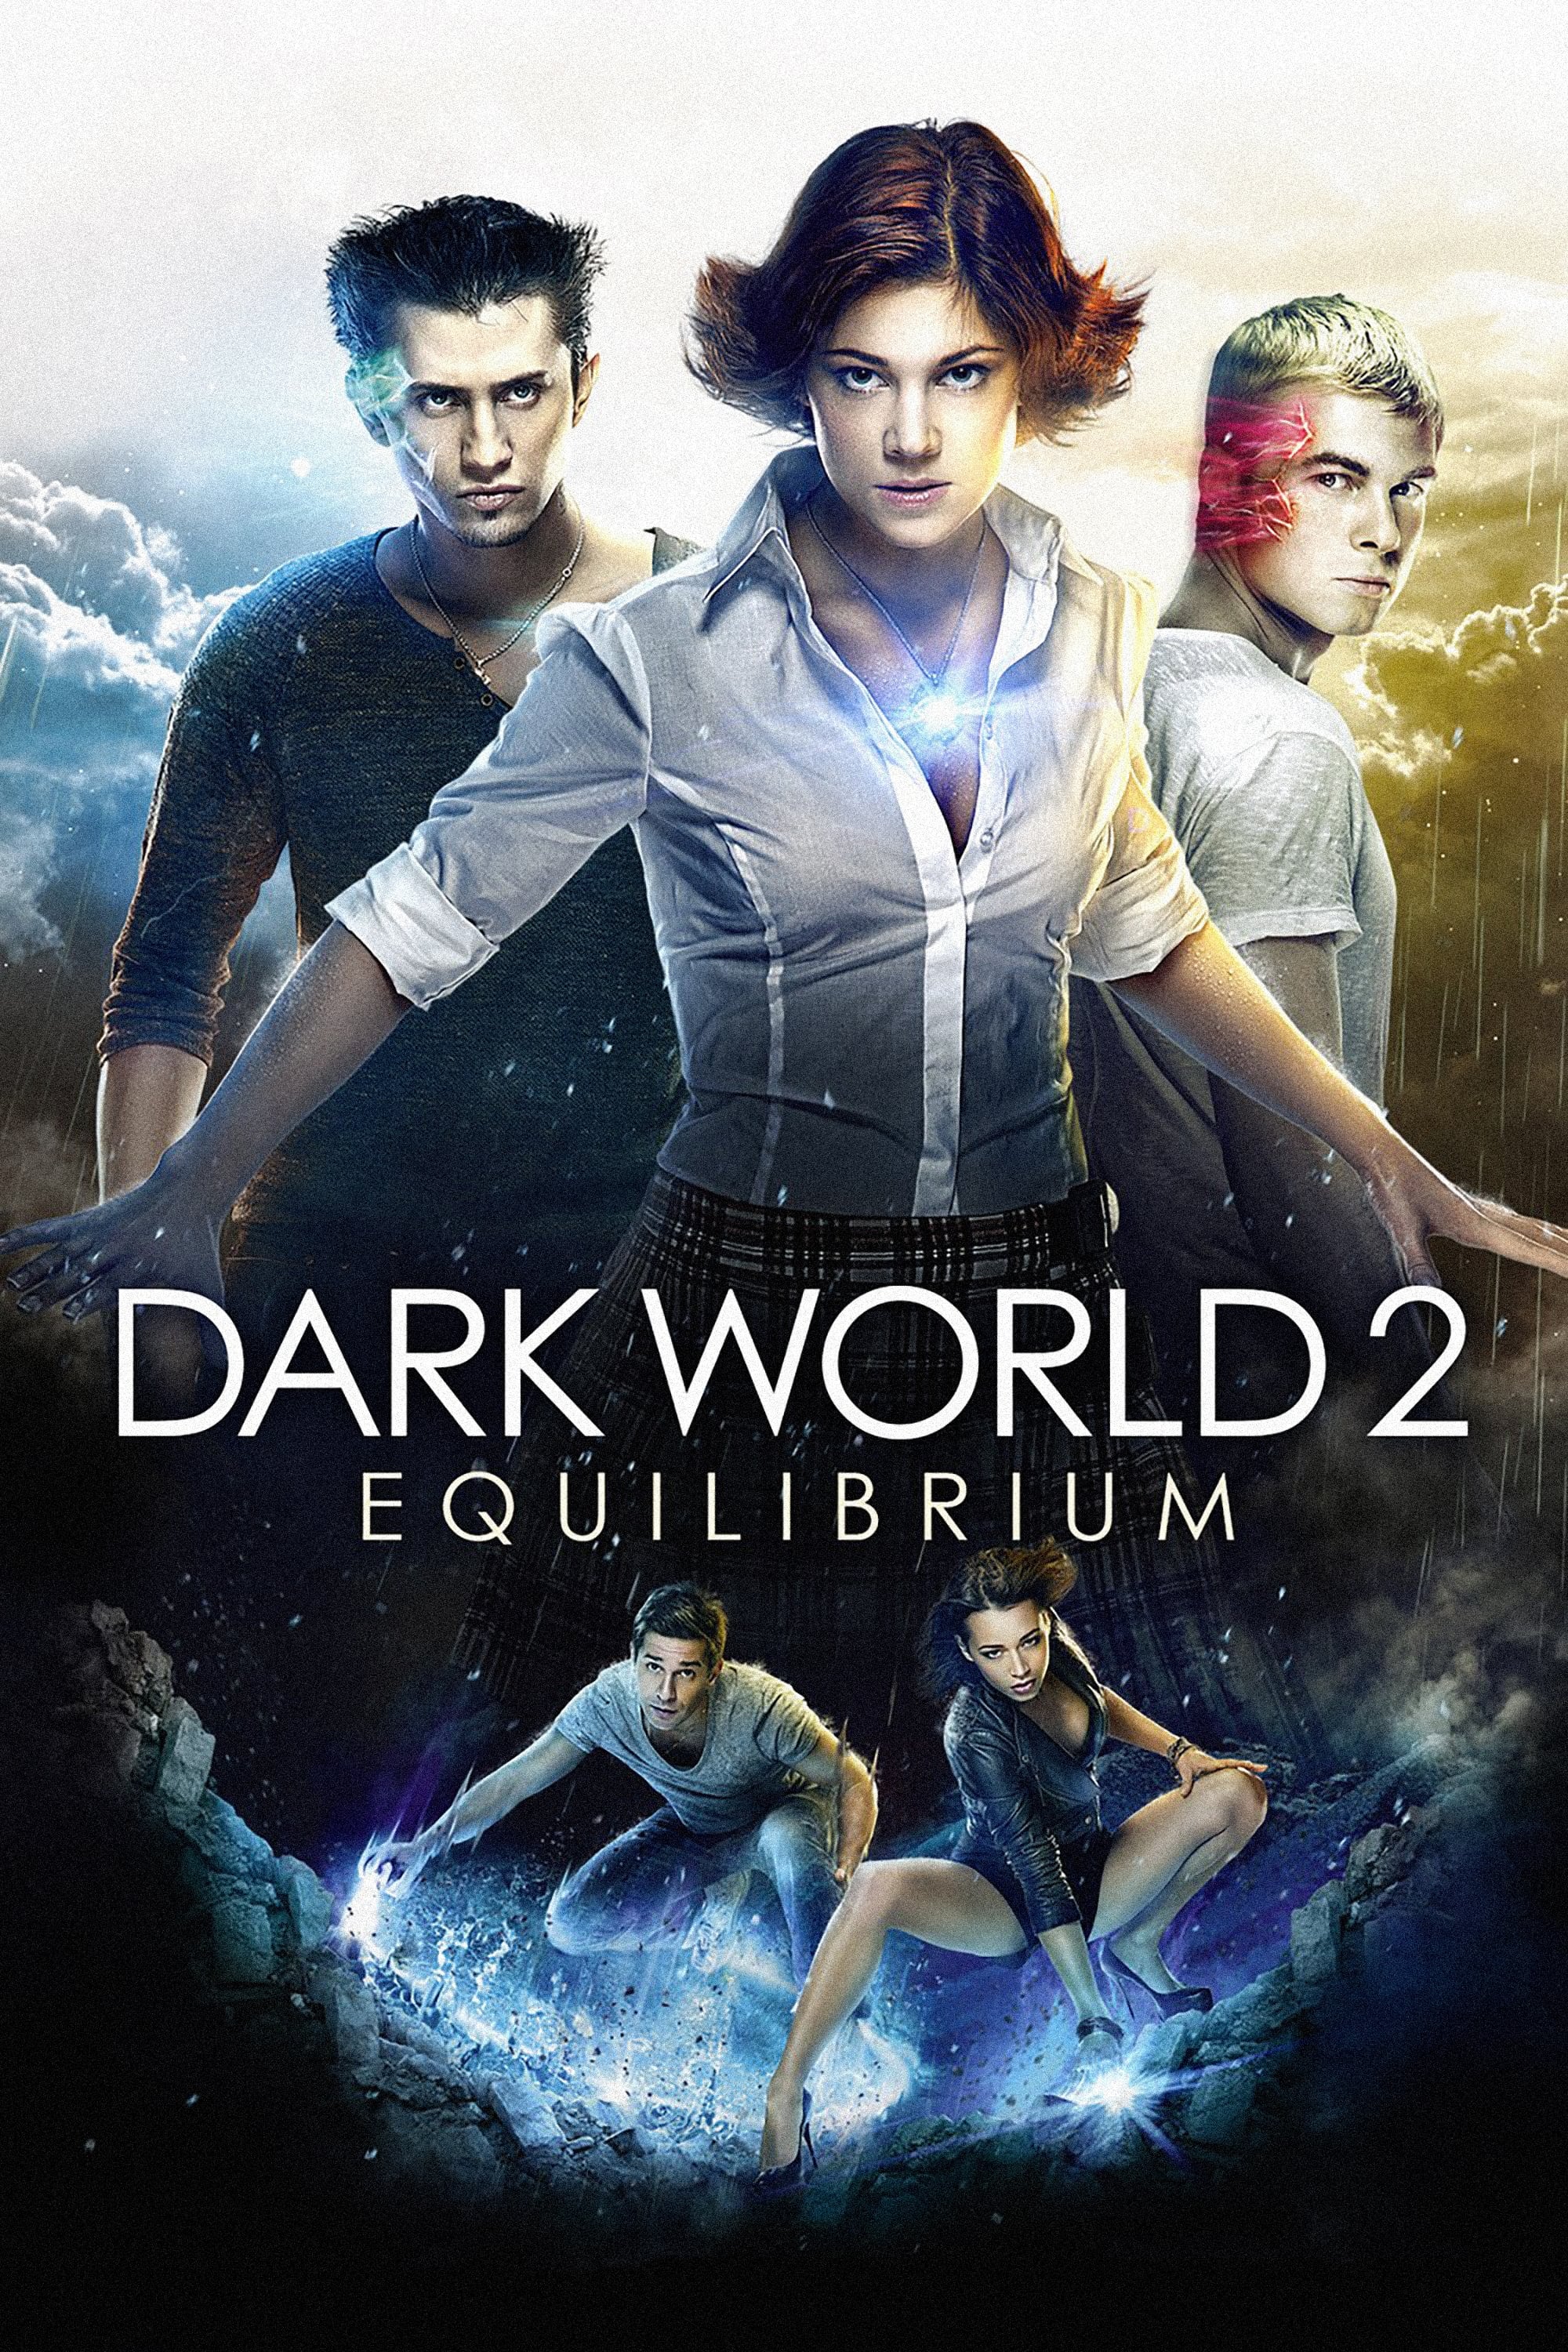 Dark World 2 - Equilibrium